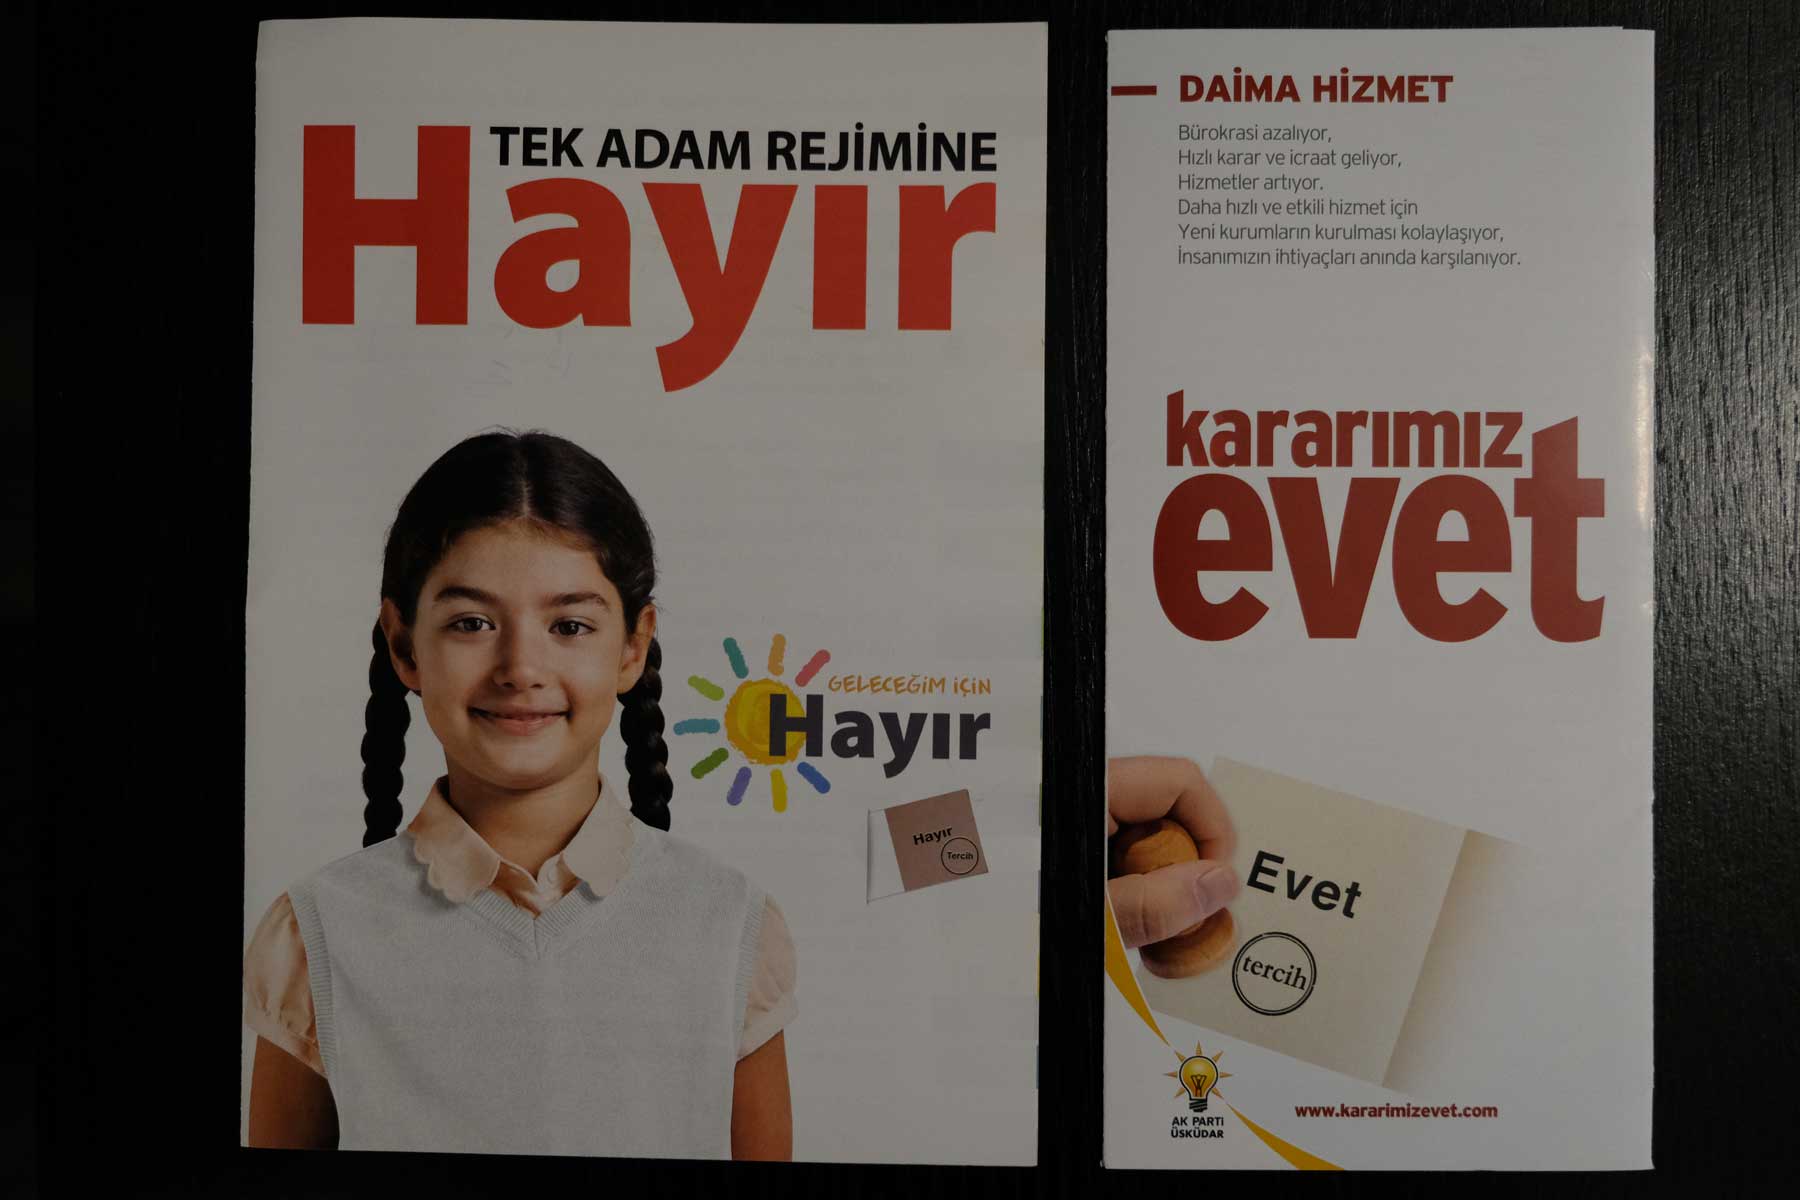 Werbebroschüren für das türkische Referendum 2017